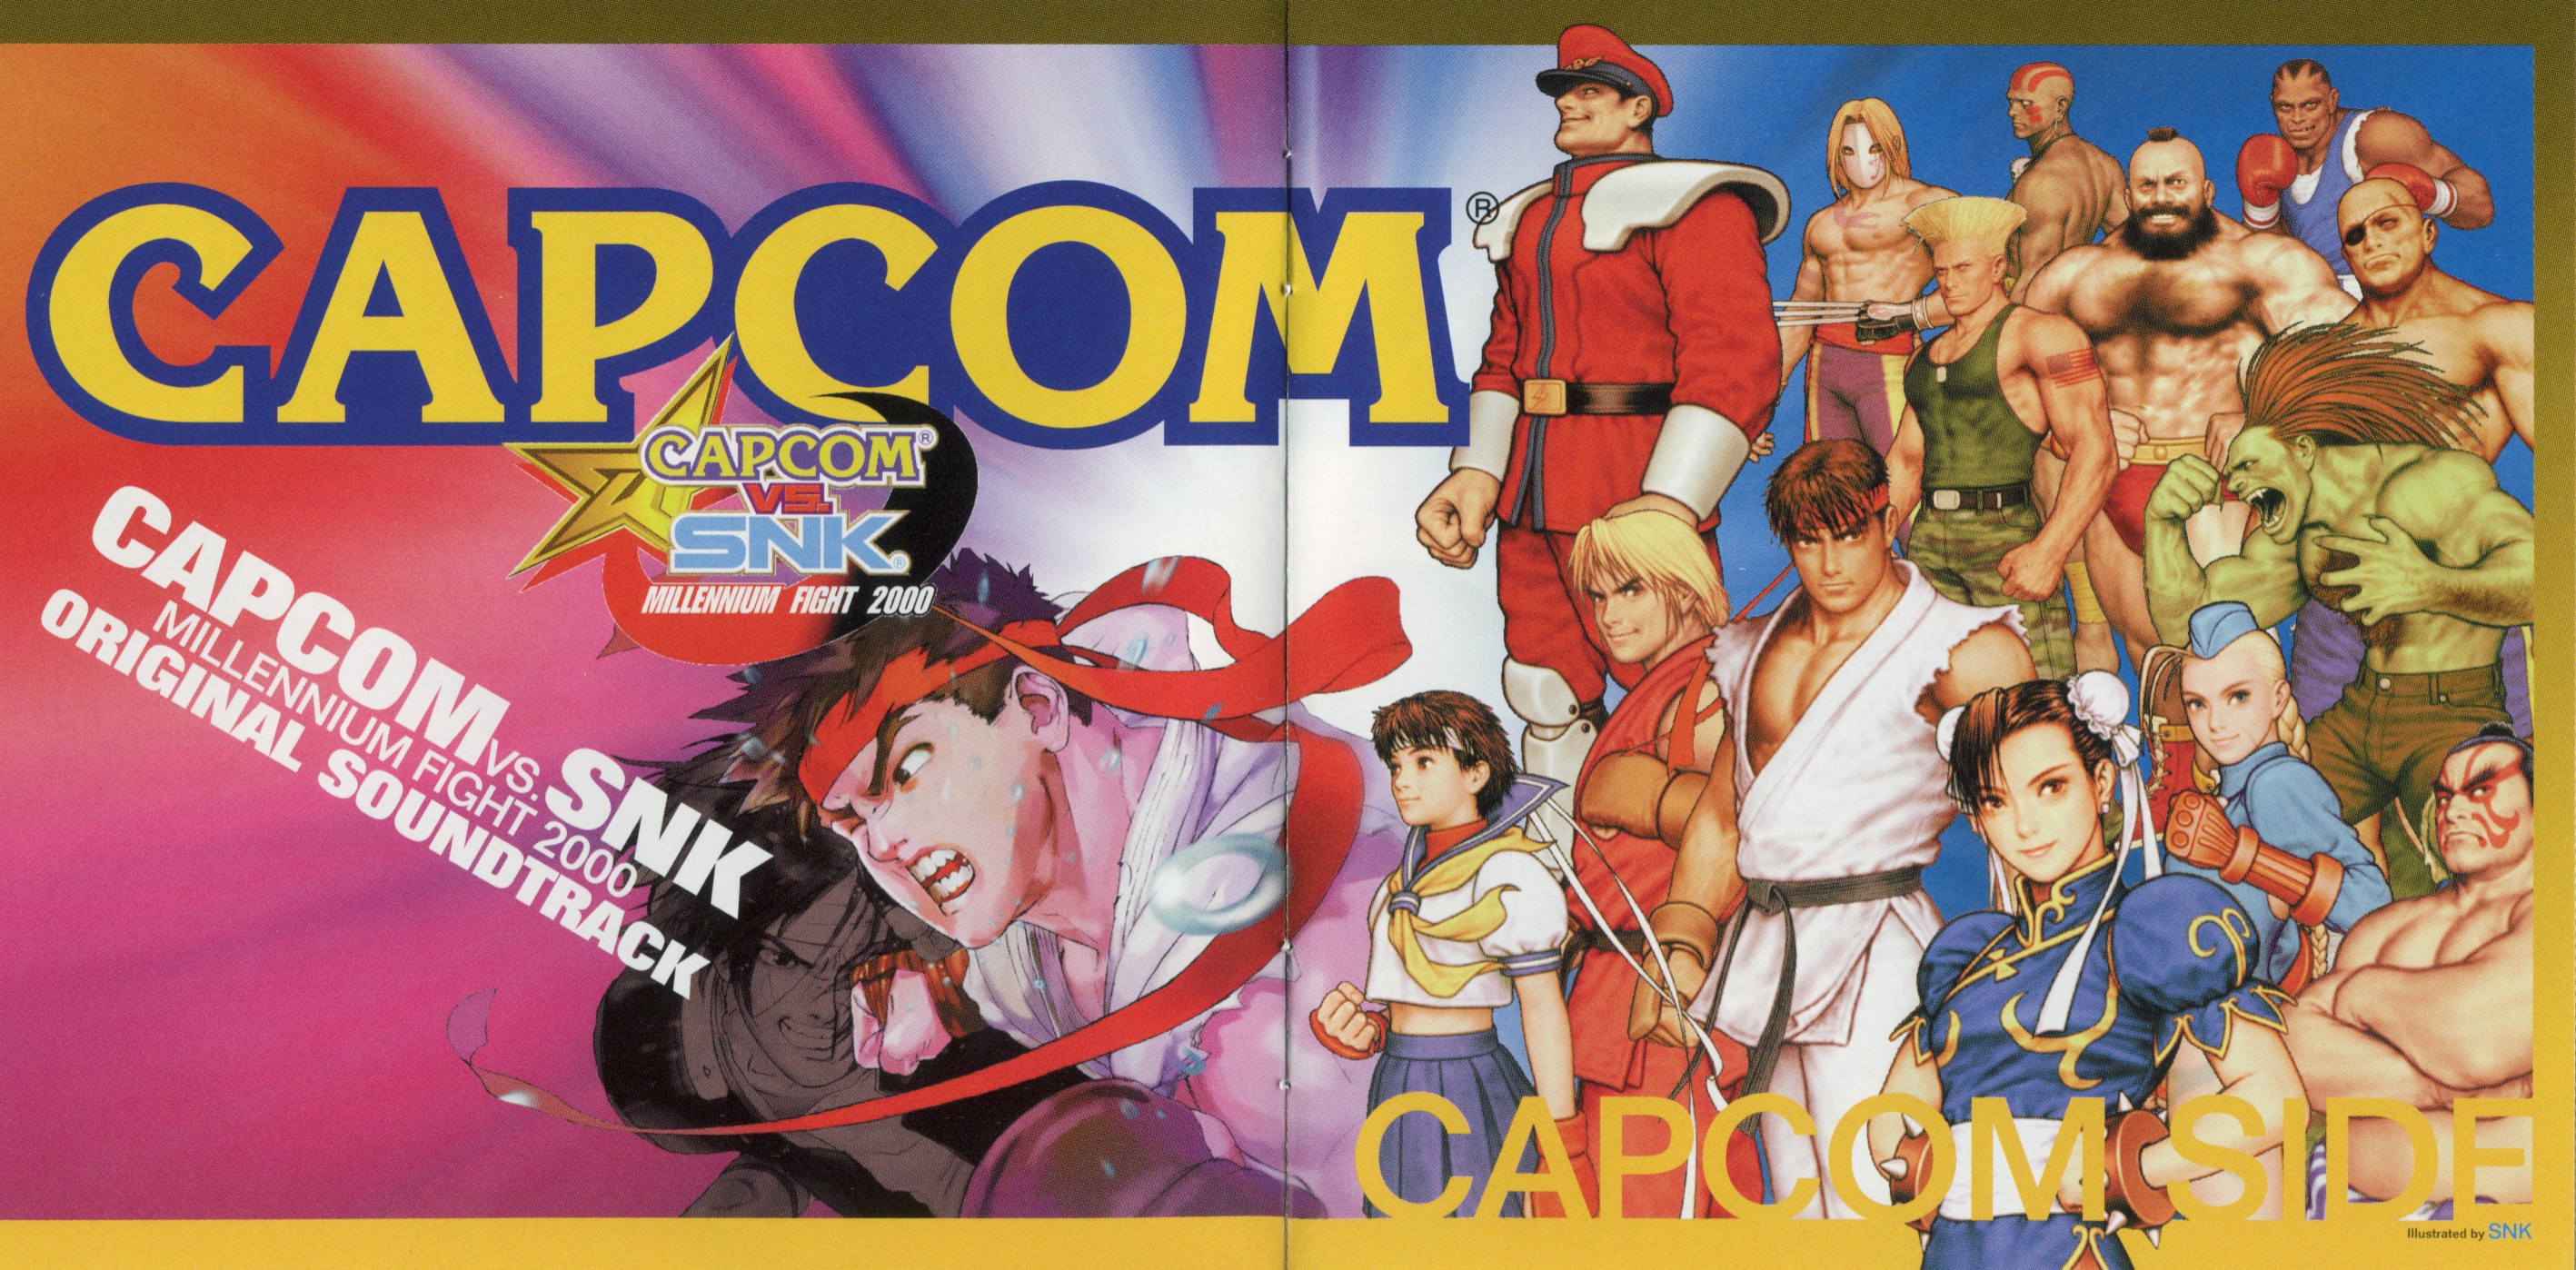 Capcom vs. SNK Millennium Fight 2000 Original Soundtrack (2000 